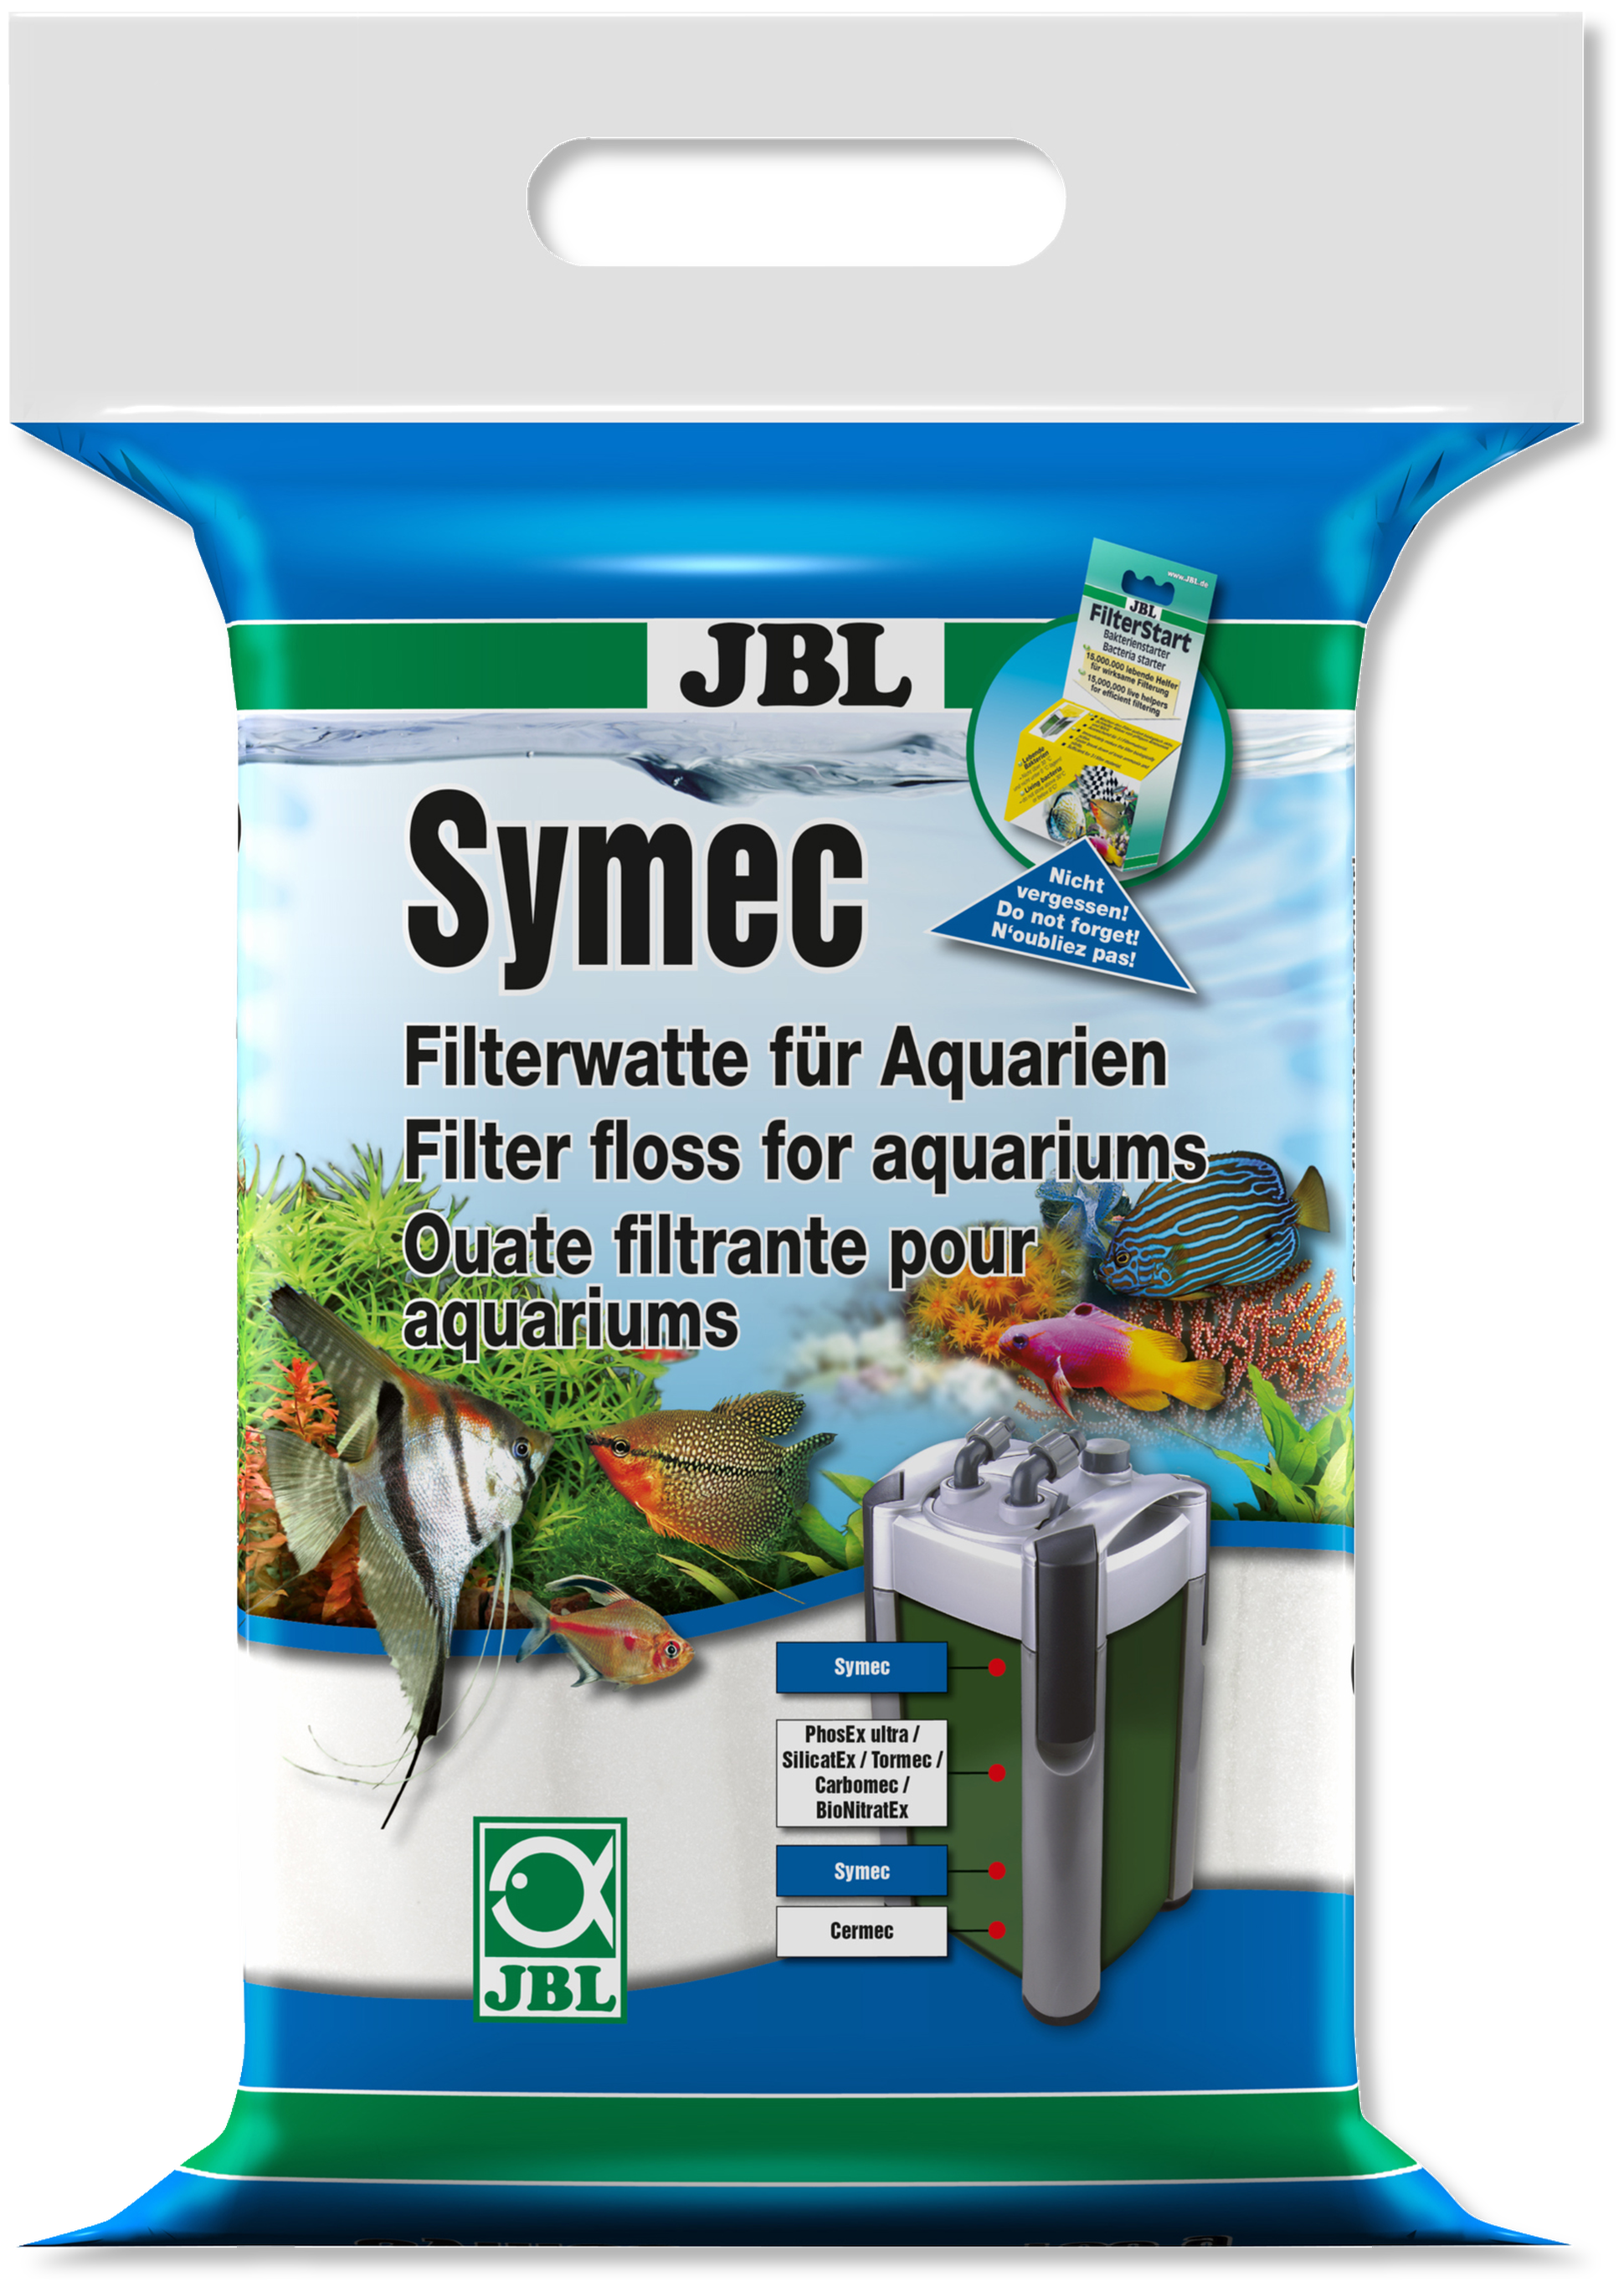 JBL Symec 1000 g- Ouate pour filtration à petit prix chez Aquario&Co